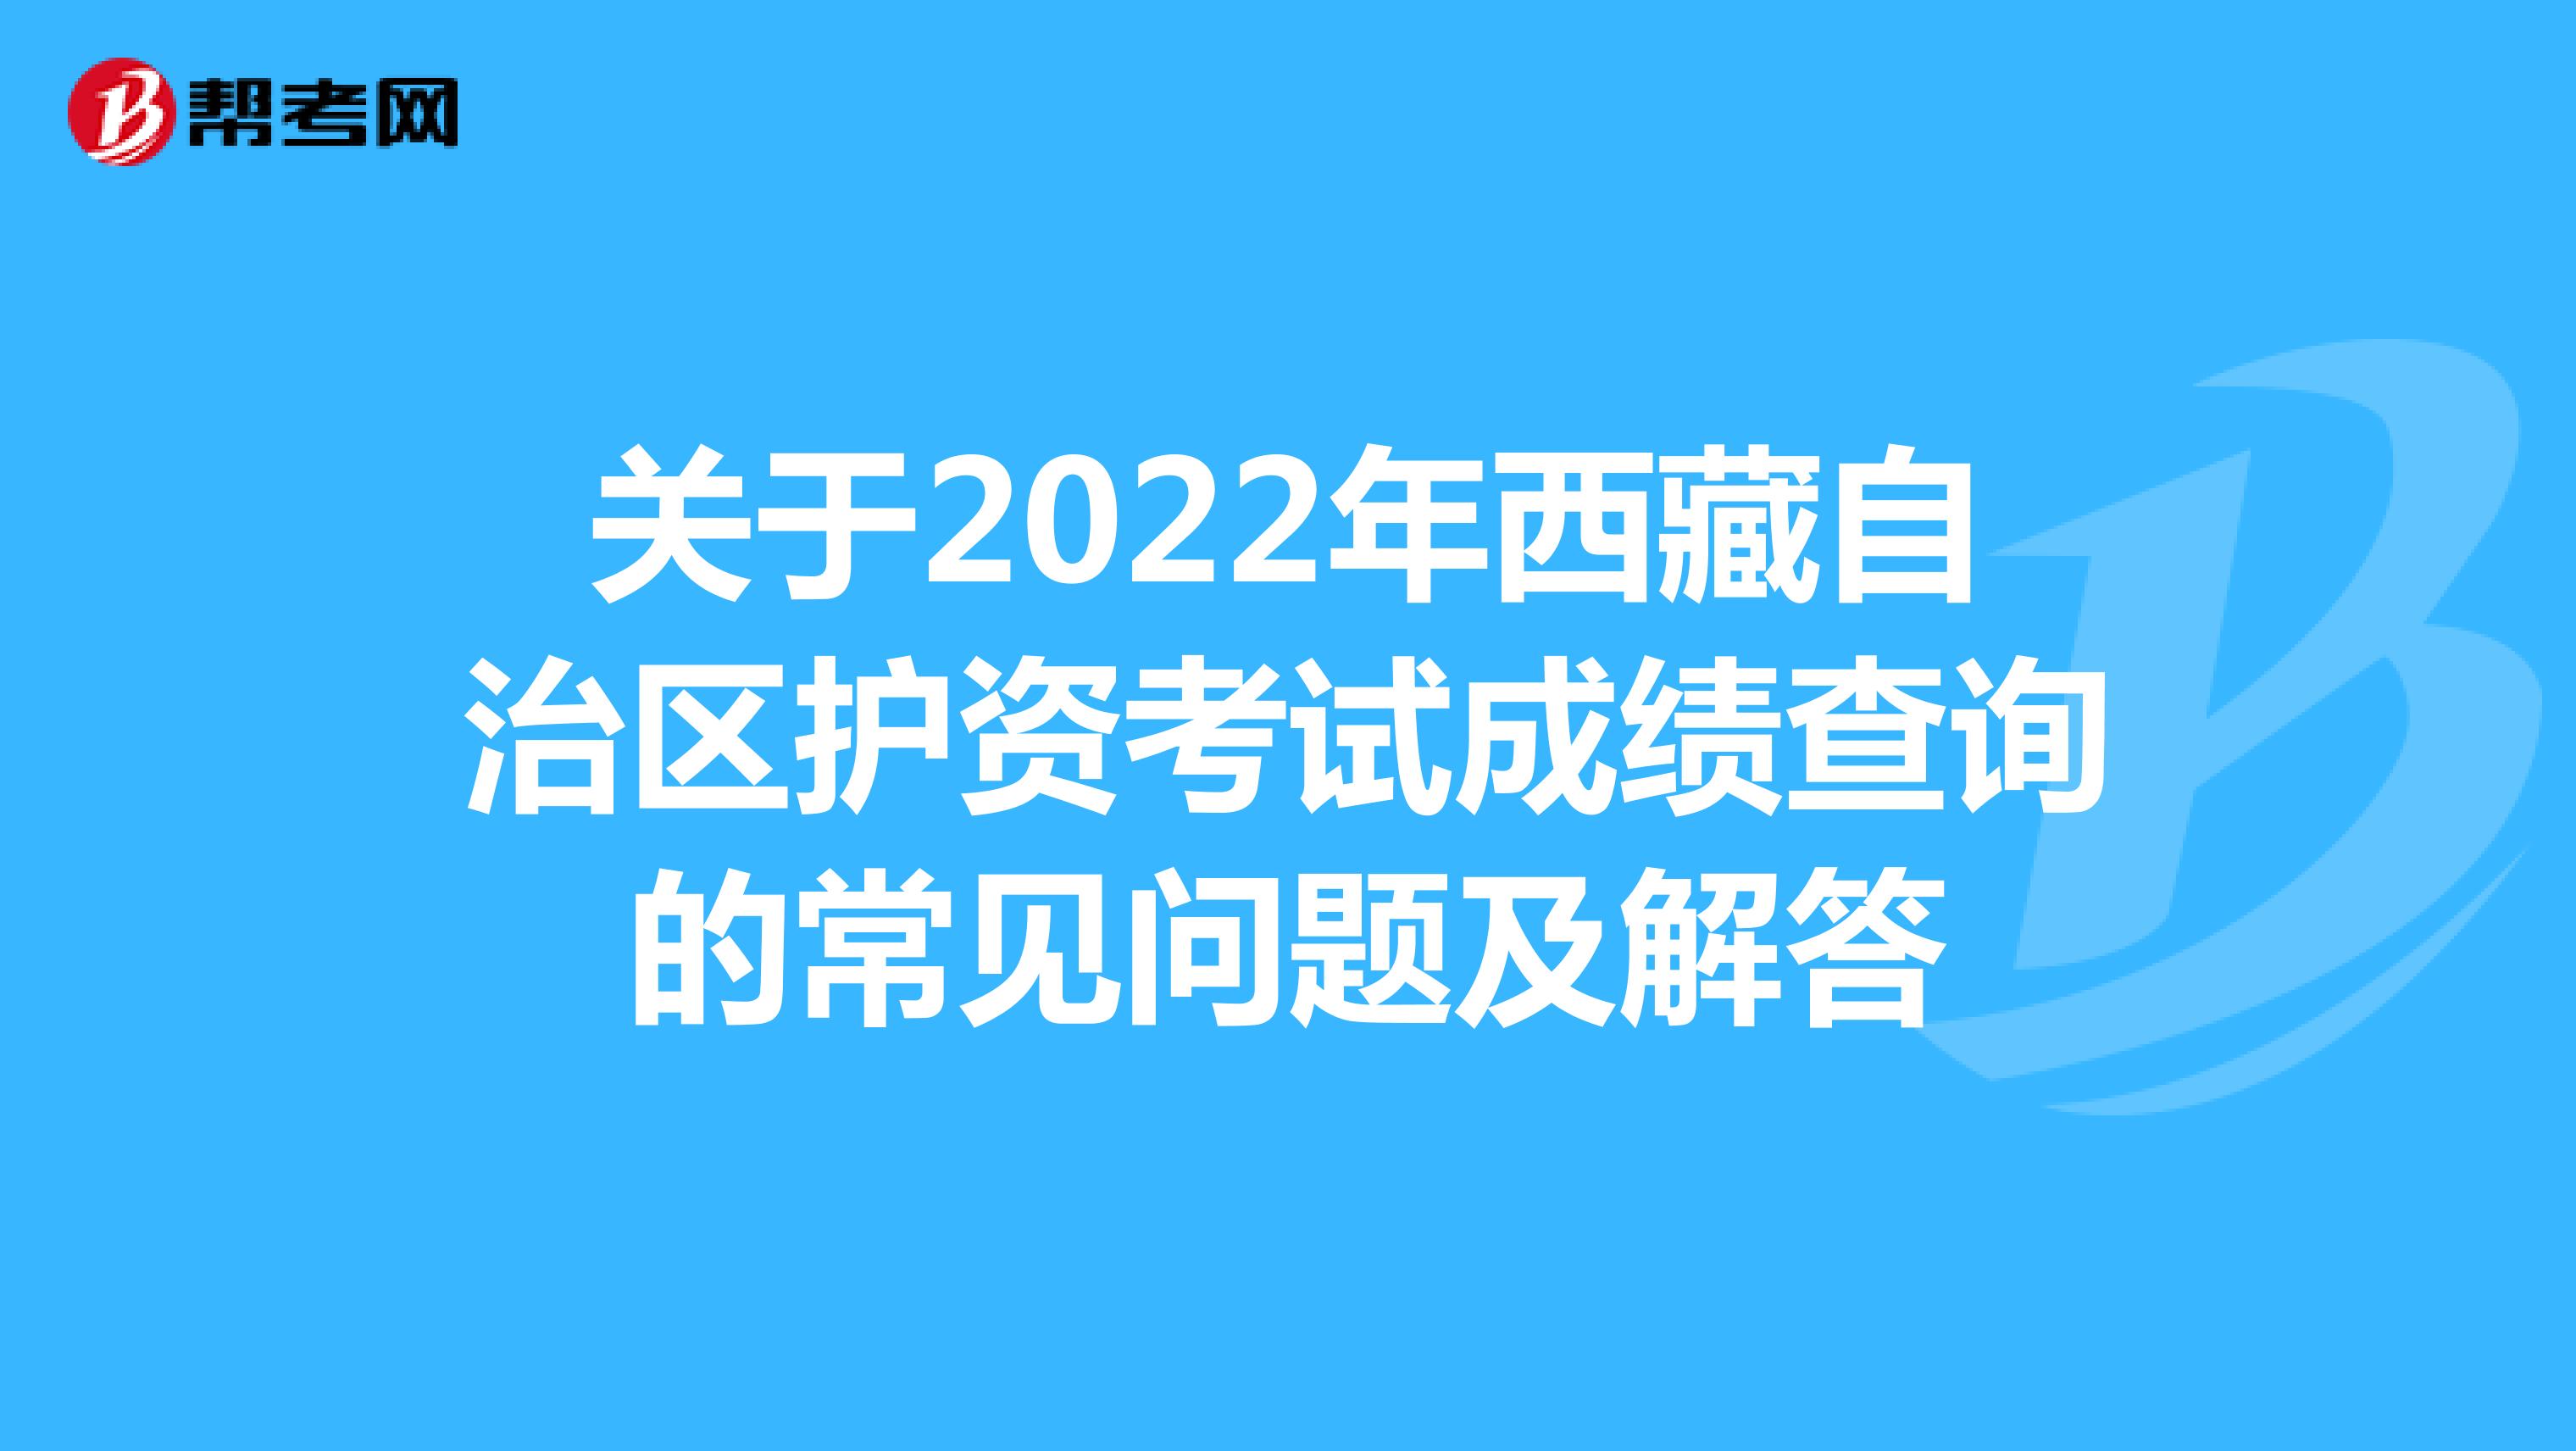 关于2022年西藏自治区护资考试成绩查询的常见问题及解答